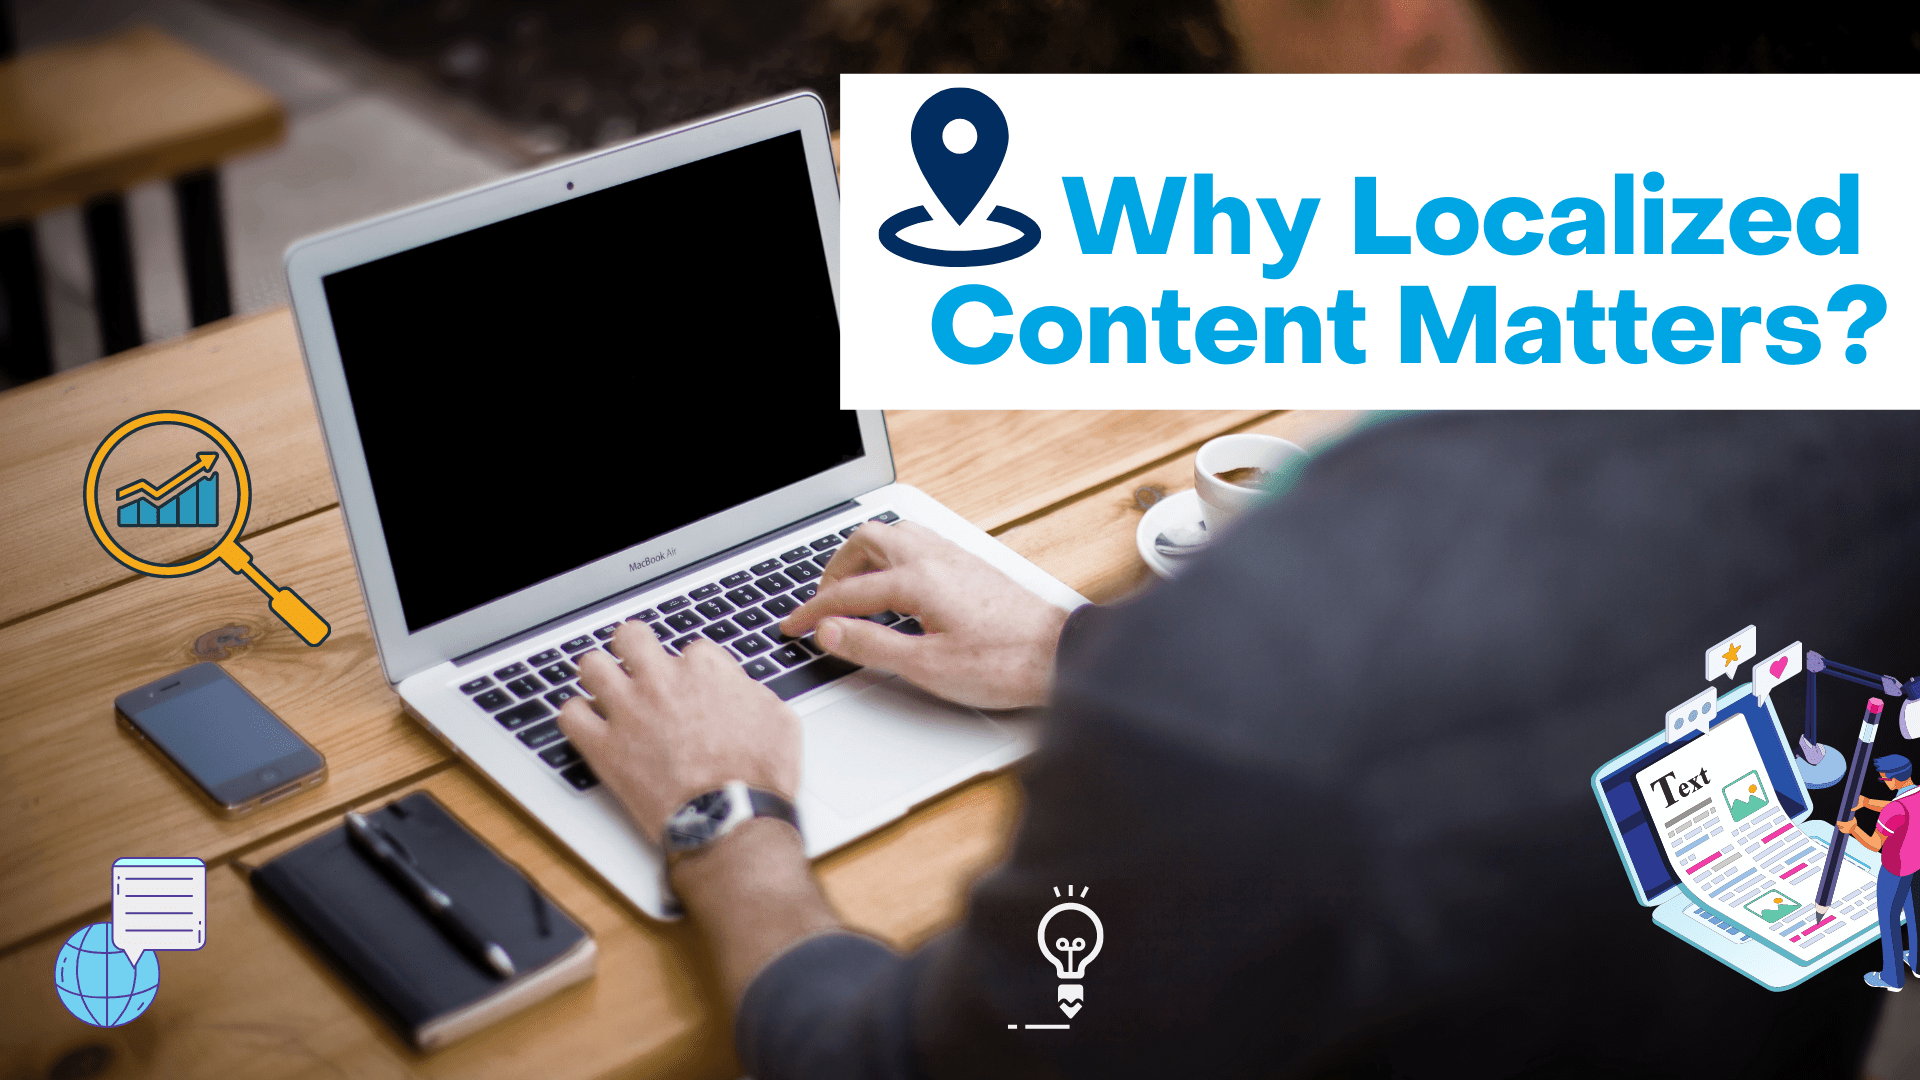 ¿Por qué es importante localizar los contenidos?